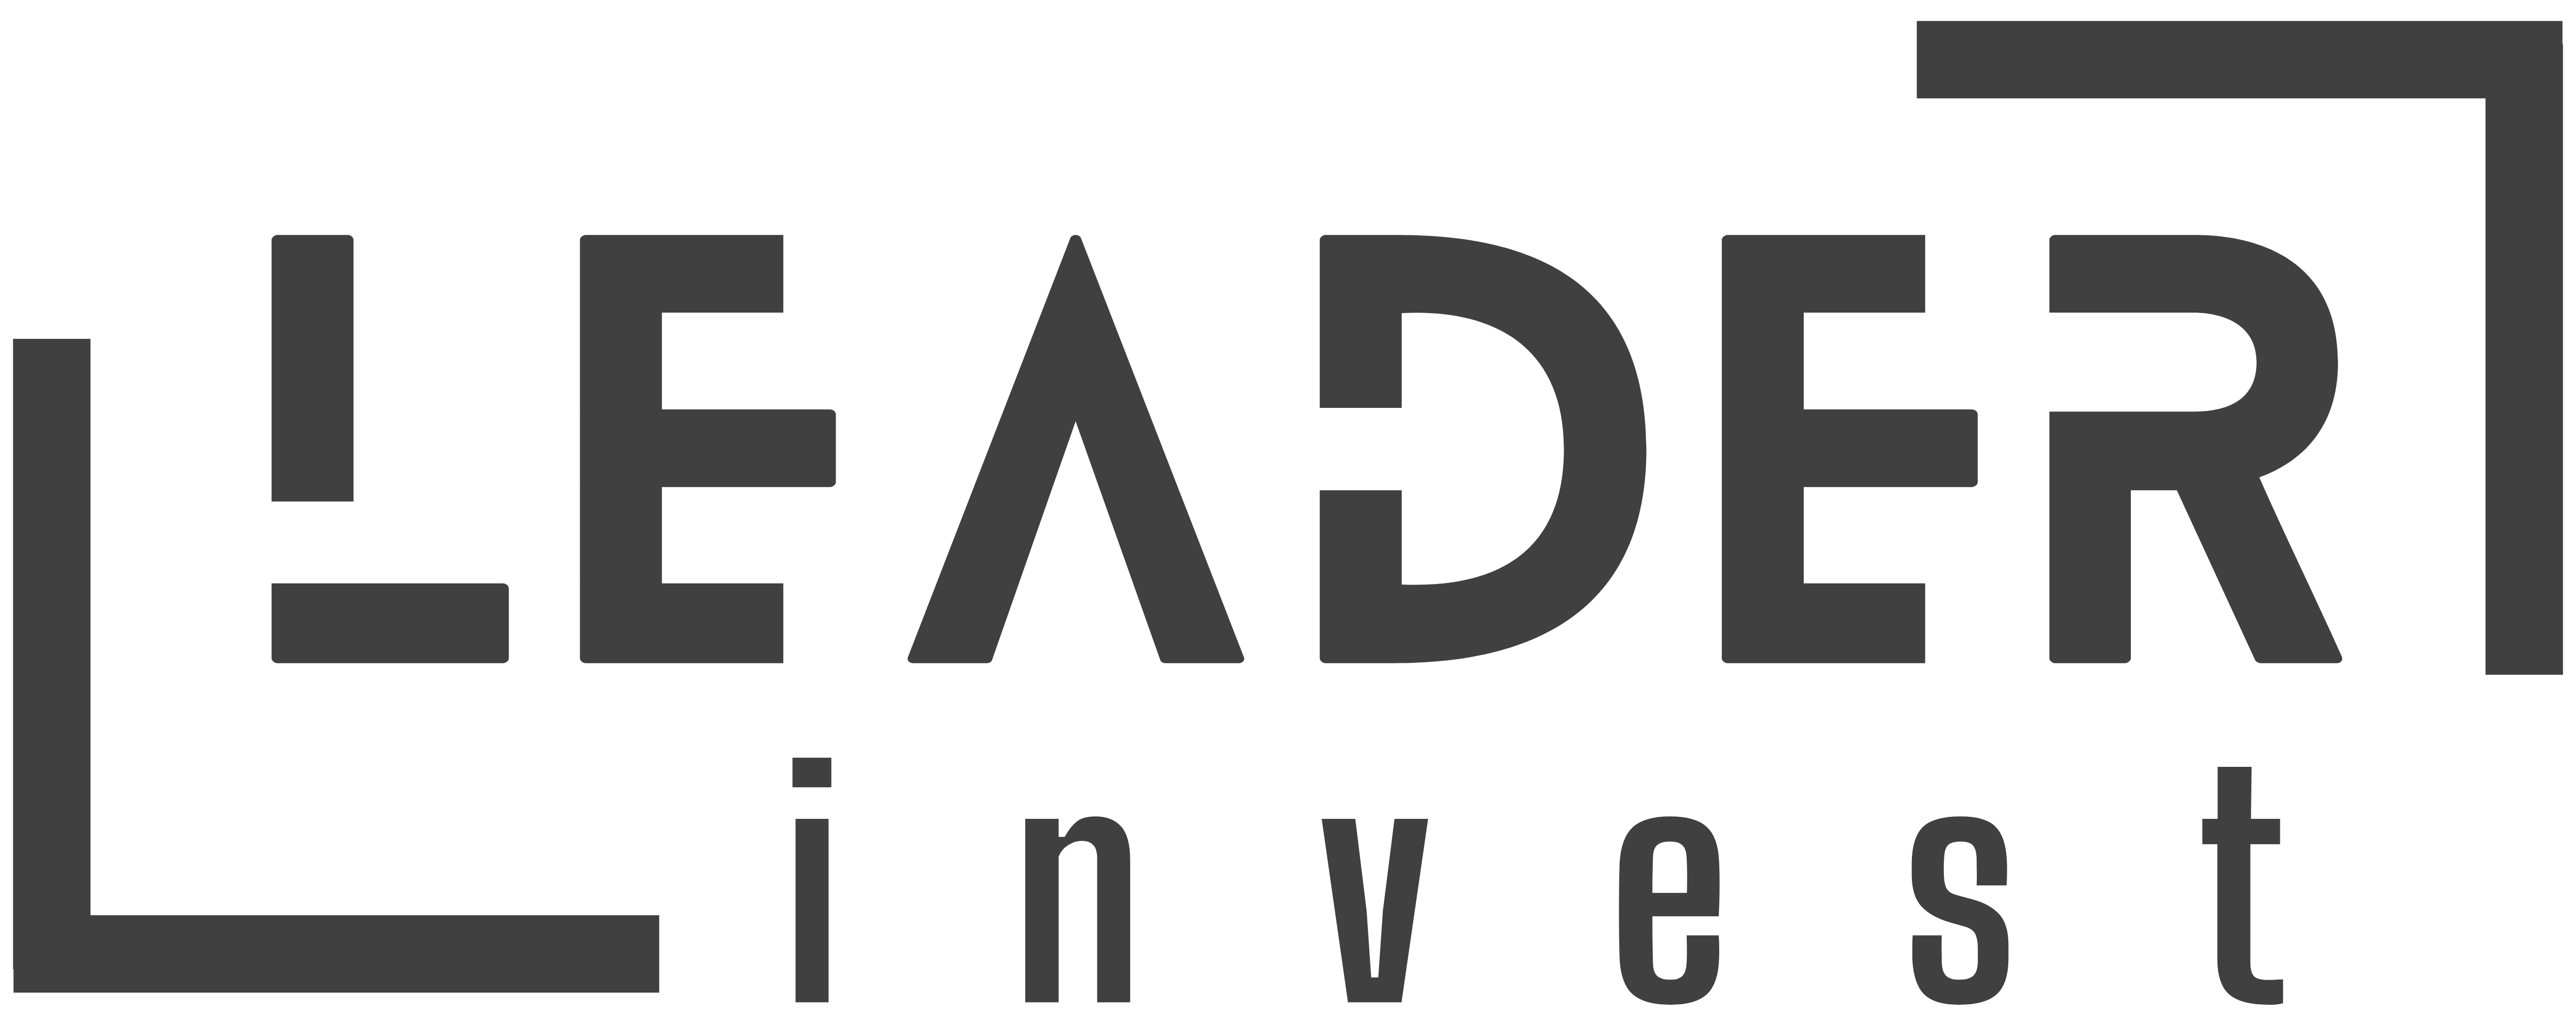 Leader invest logo- לידר אינווסט לוגו